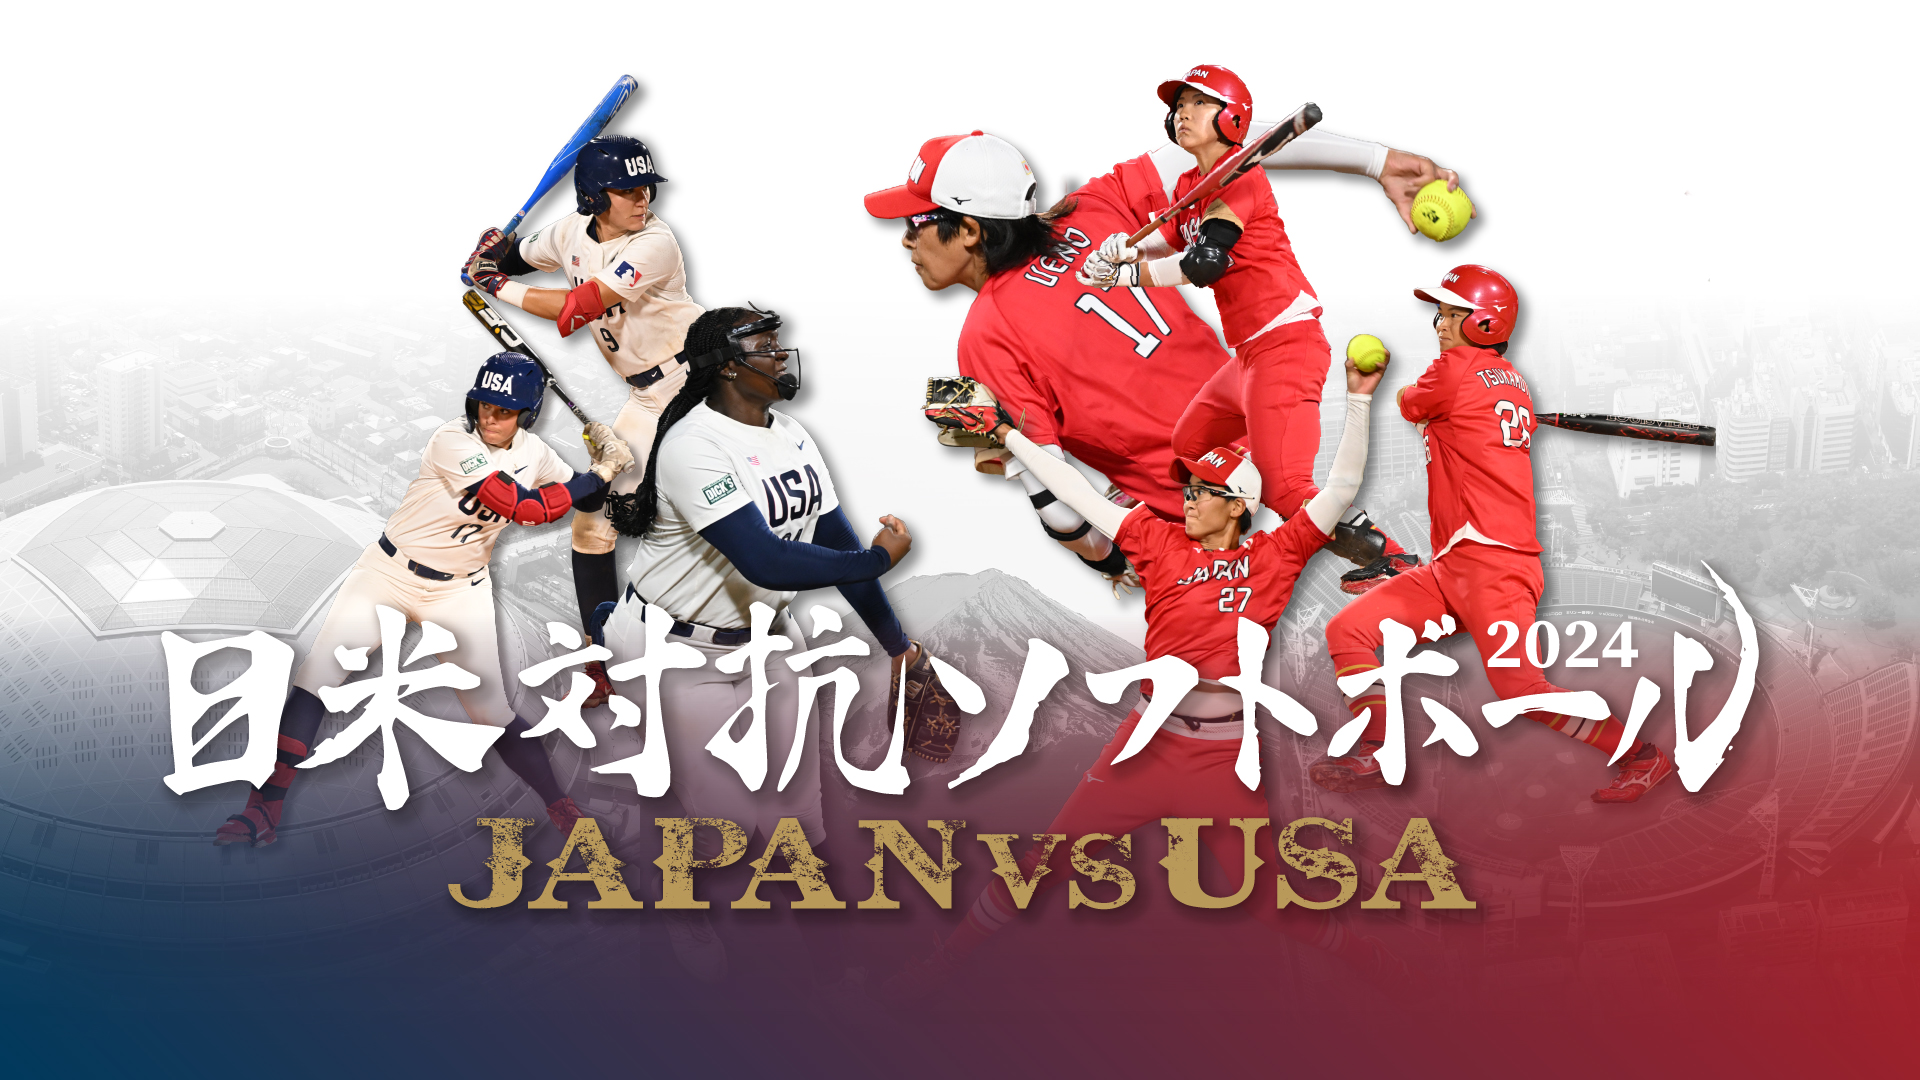 日米対抗ソフトボール2023 JAPAN vs USA